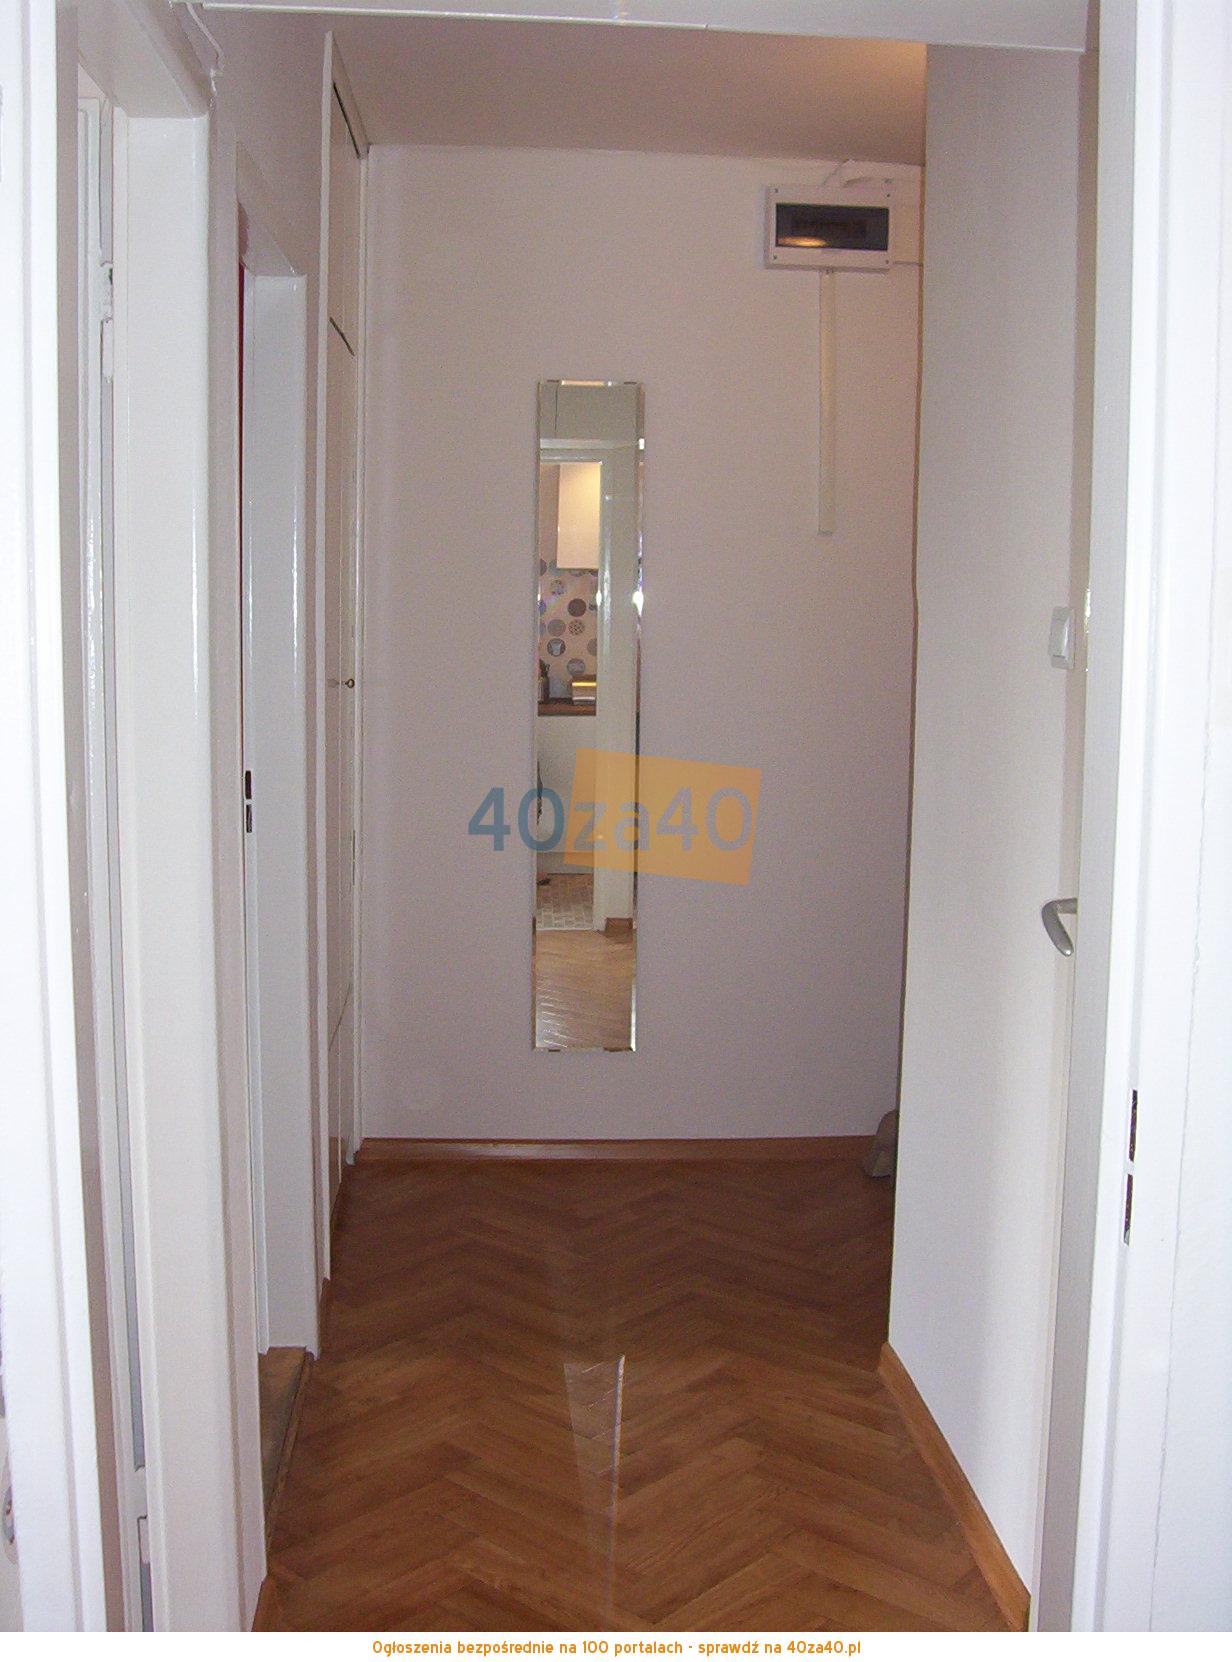 Mieszkanie do wynajęcia, pokoje: 2, cena: 1 300,00 PLN, Sopot, kontakt: 784 344 911